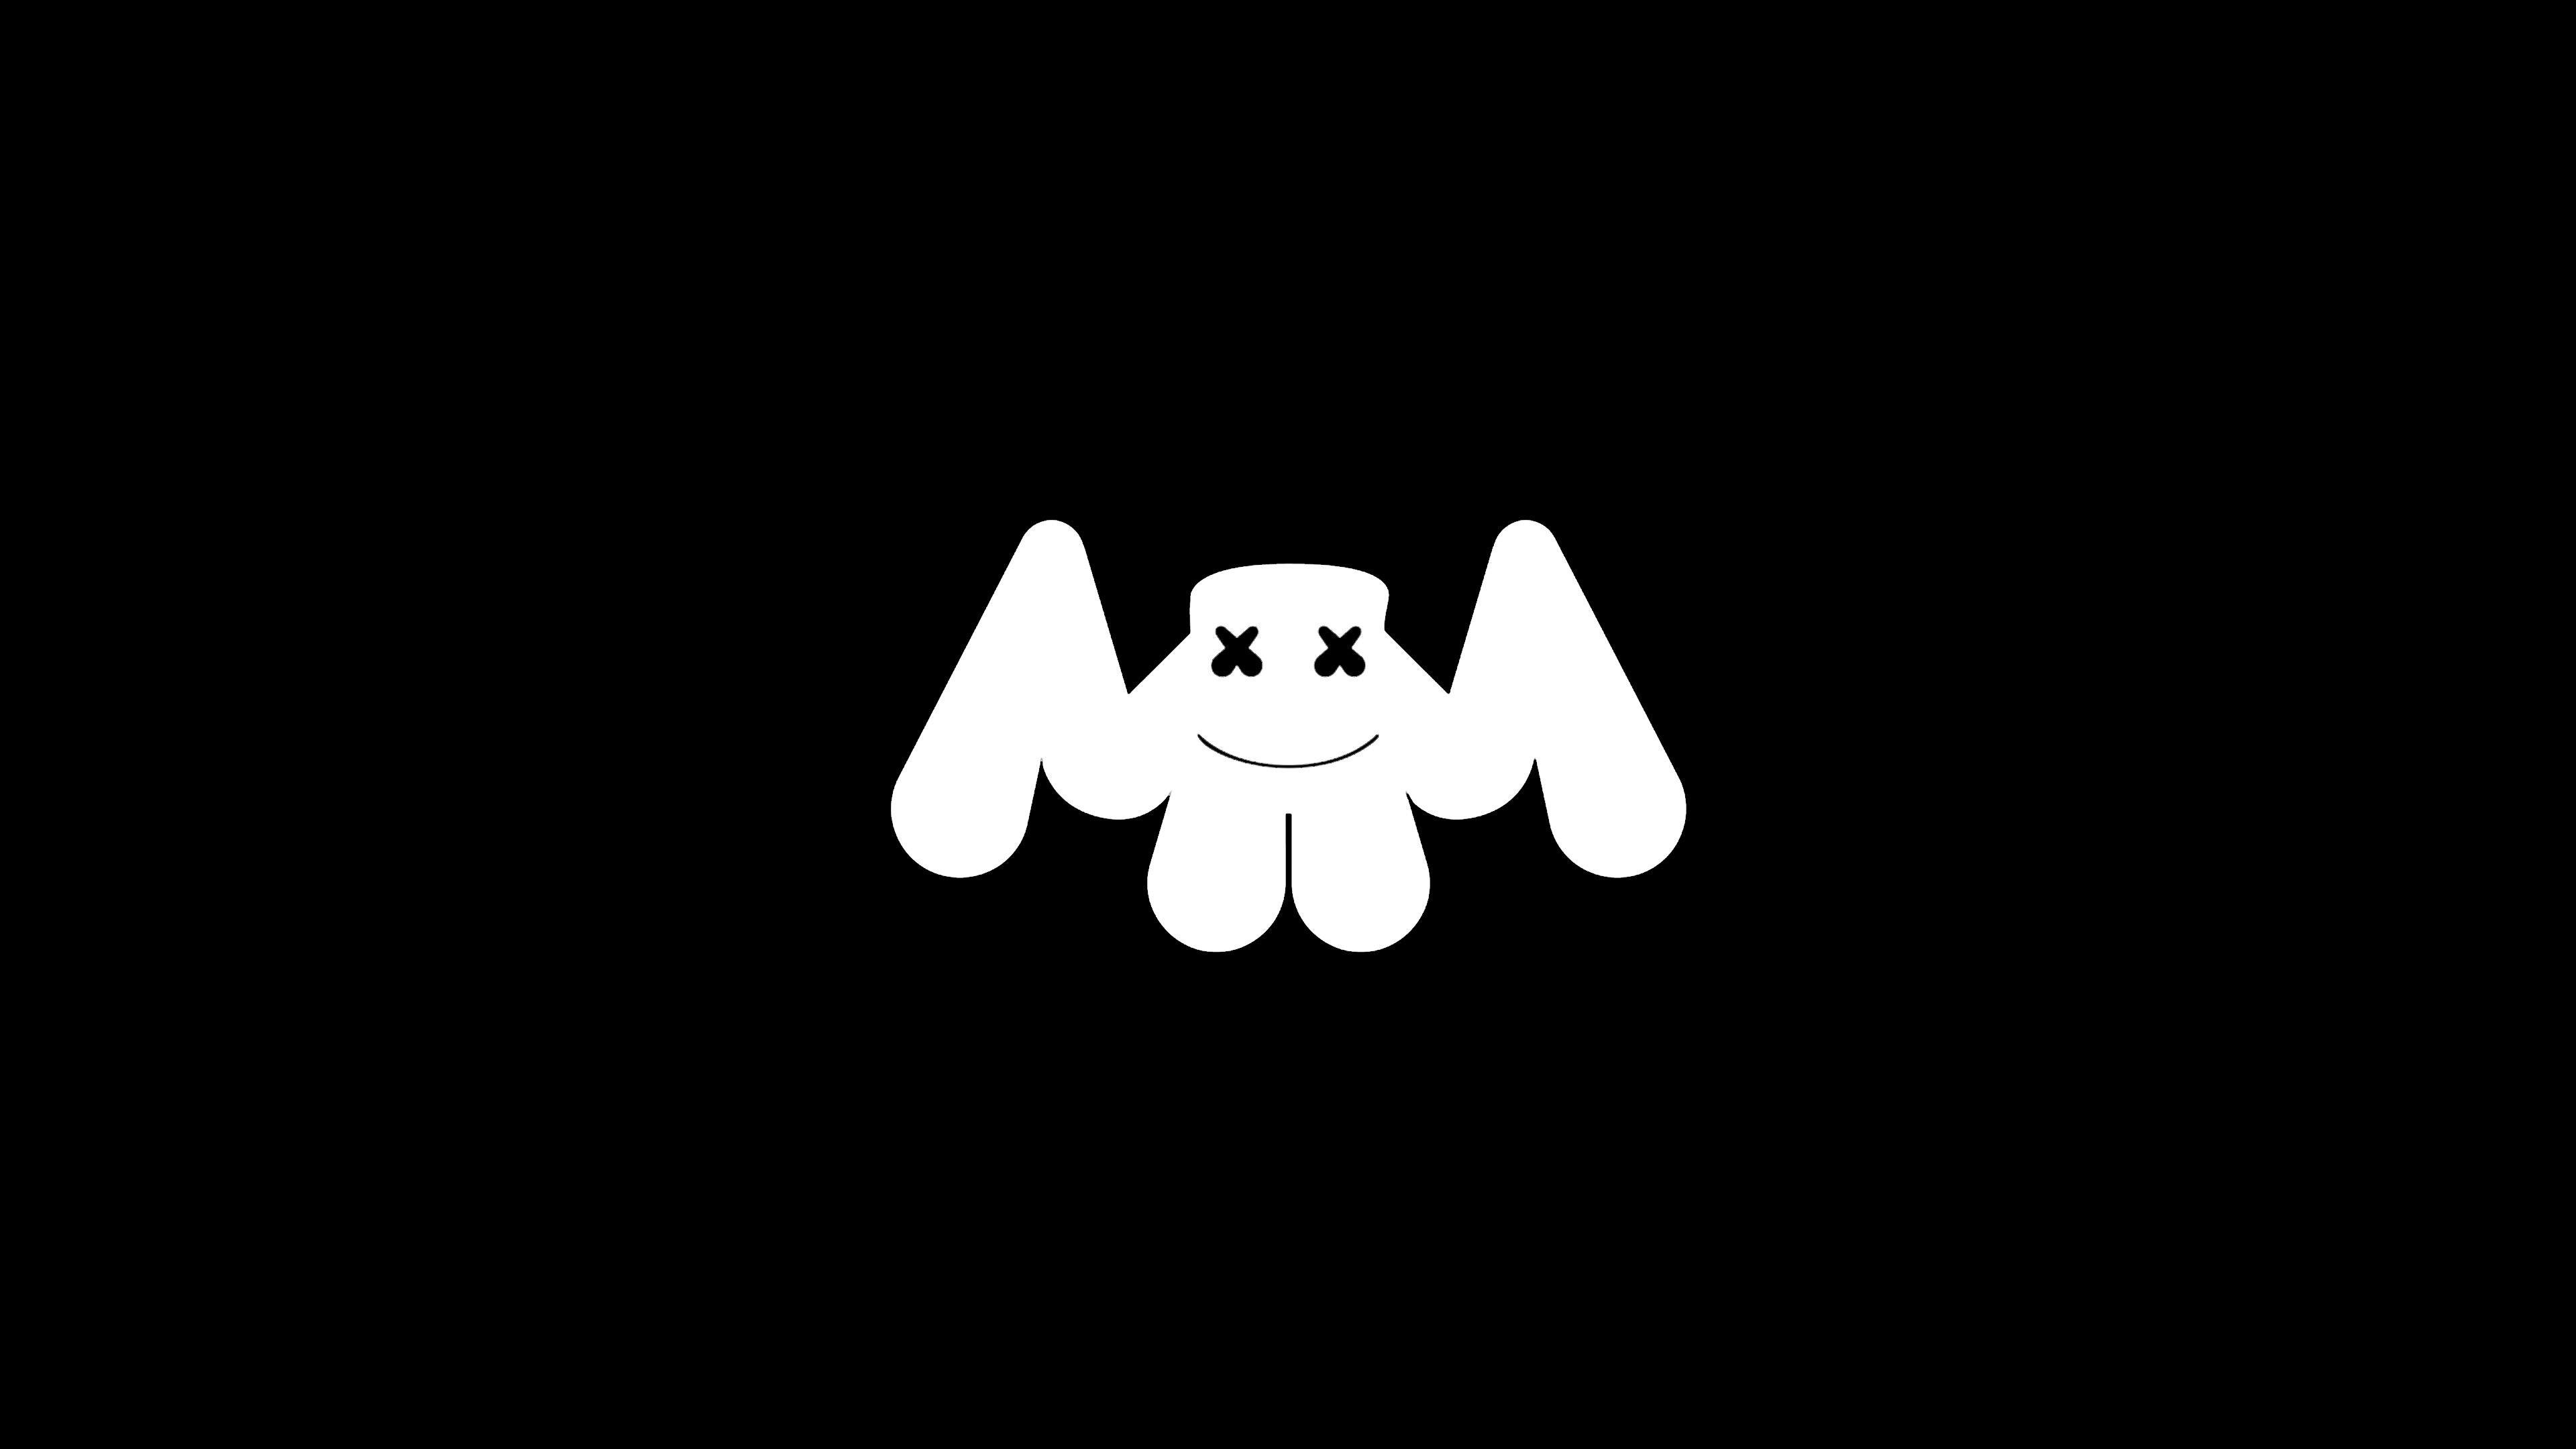 Wallpapers miscellaneous Marshmello logo on the desktop